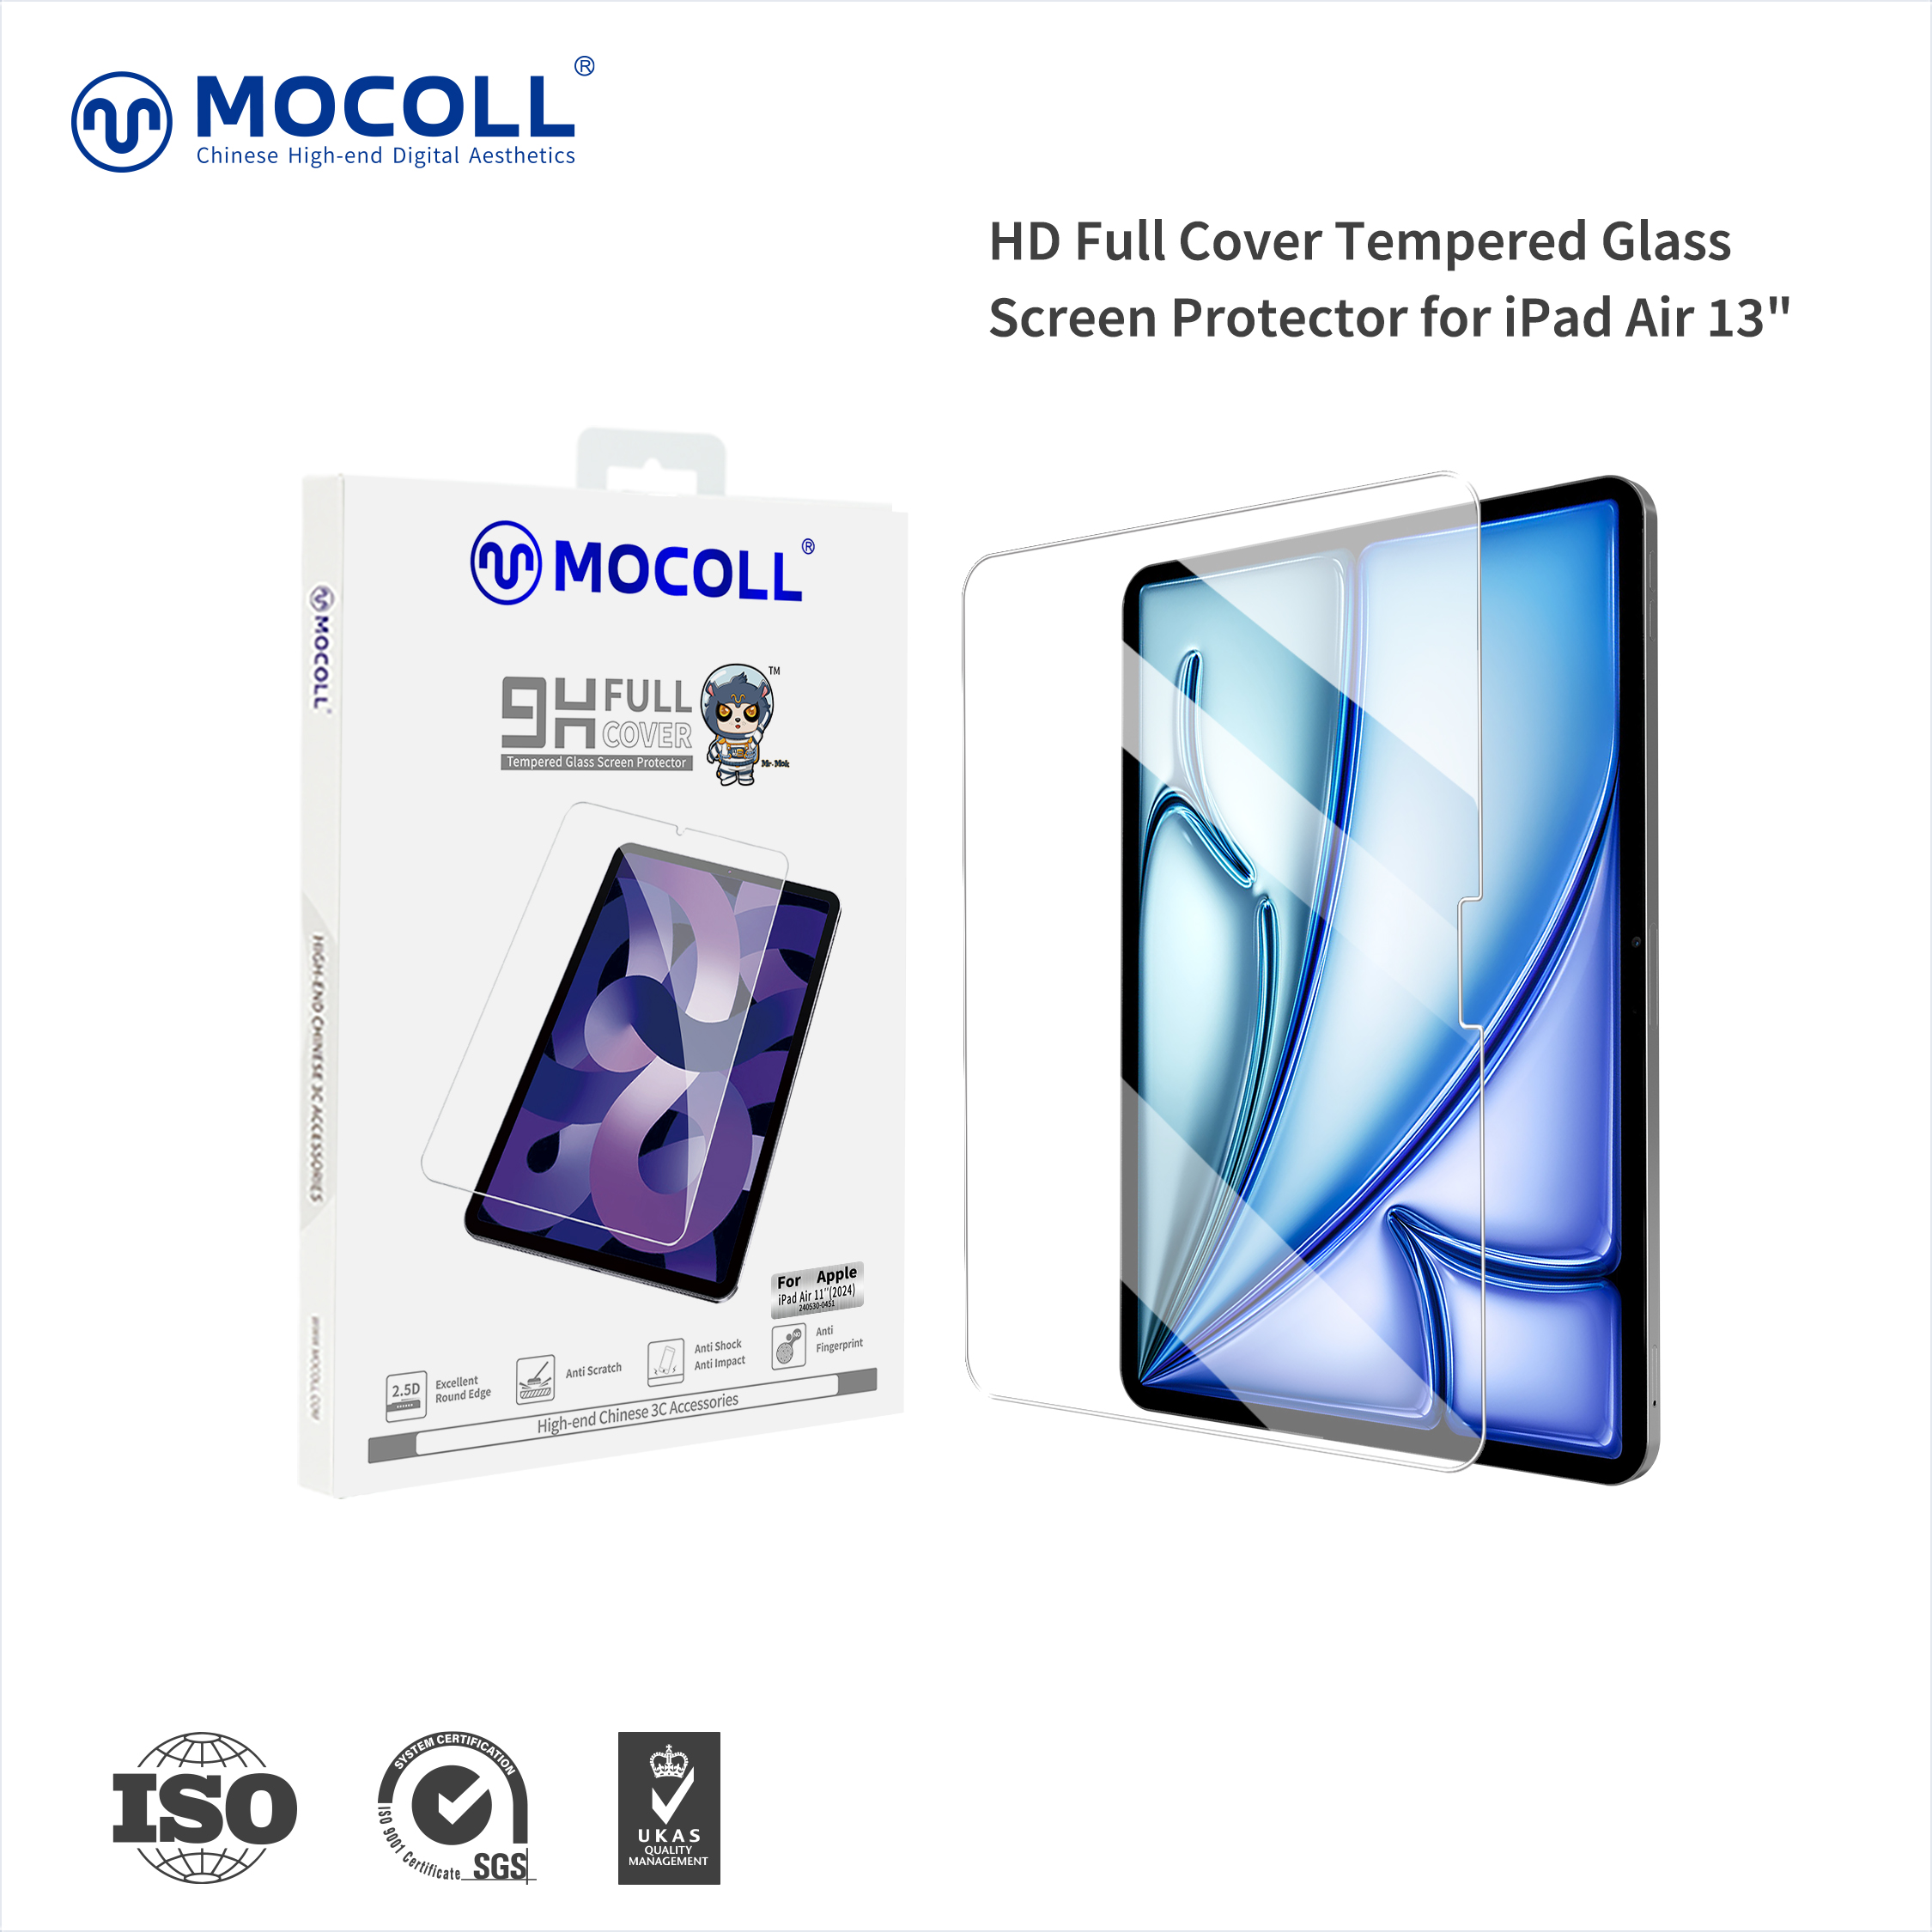 주문 플래티넘 시리즈 HD 강화 유리 화면 보호 필름 - 아이패드 공기 6,플래티넘 시리즈 HD 강화 유리 화면 보호 필름 - 아이패드 공기 6 가격,플래티넘 시리즈 HD 강화 유리 화면 보호 필름 - 아이패드 공기 6 브랜드,플래티넘 시리즈 HD 강화 유리 화면 보호 필름 - 아이패드 공기 6 제조업체,플래티넘 시리즈 HD 강화 유리 화면 보호 필름 - 아이패드 공기 6 인용,플래티넘 시리즈 HD 강화 유리 화면 보호 필름 - 아이패드 공기 6 회사,